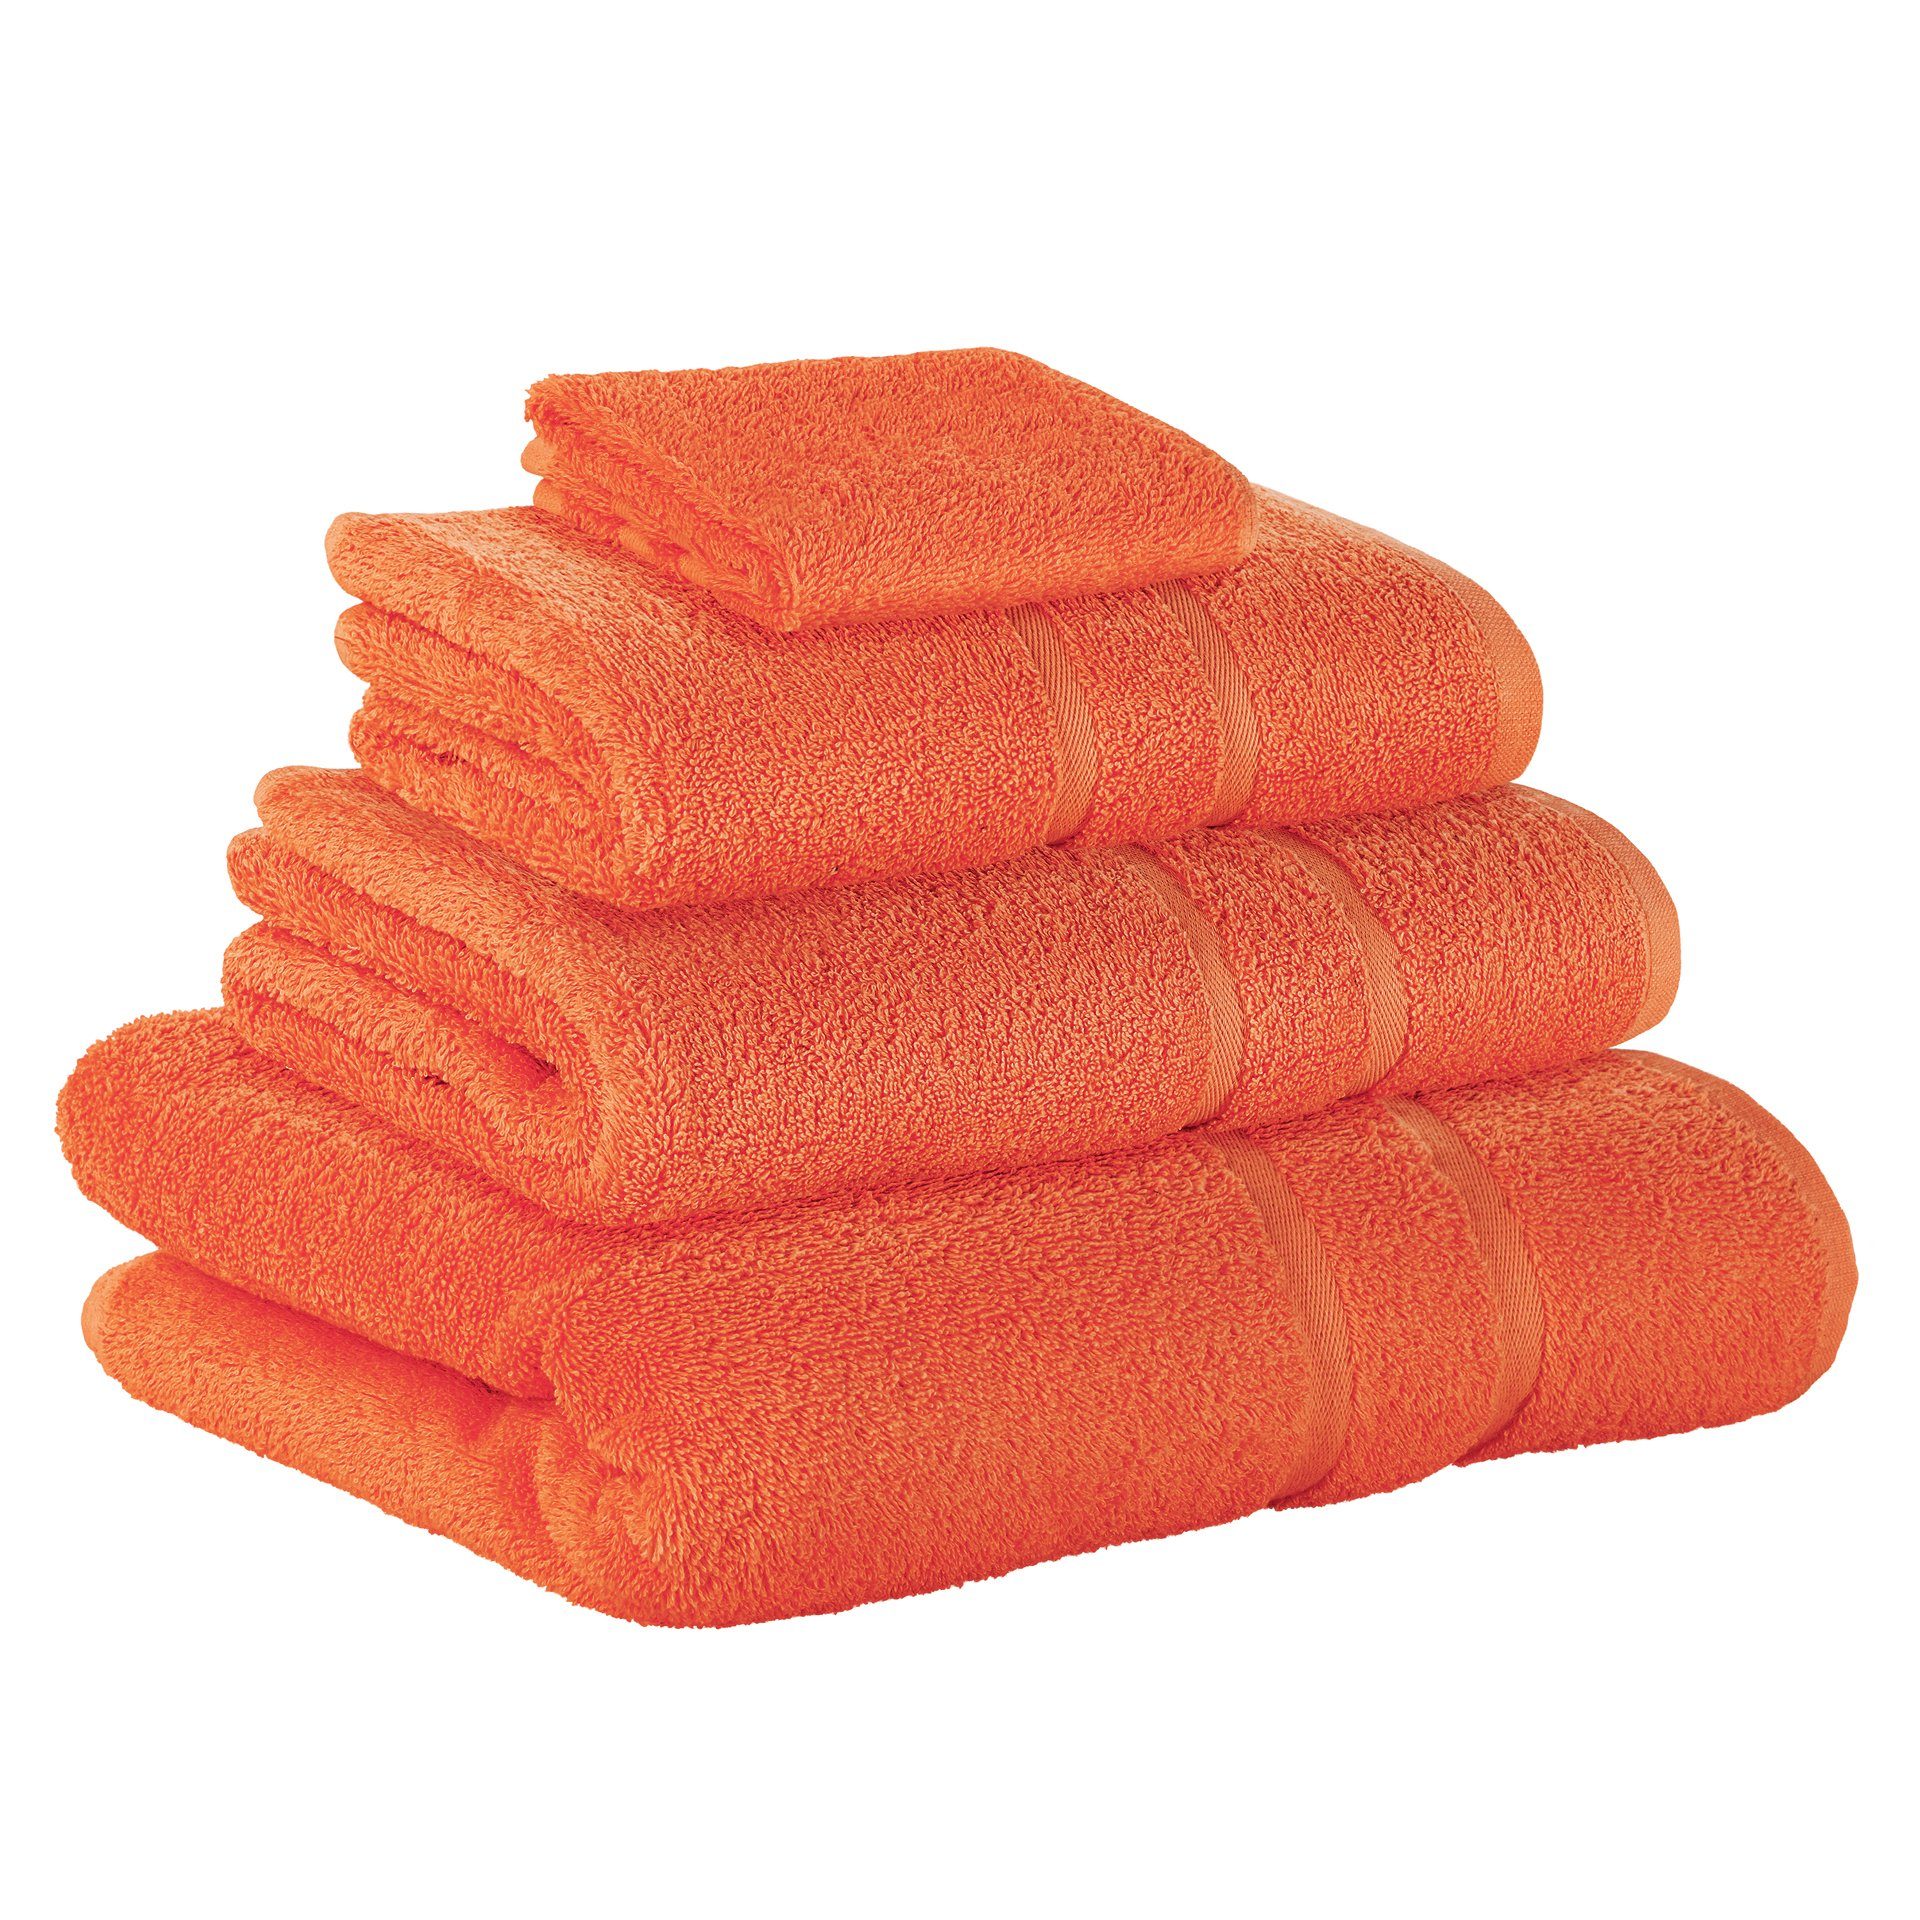 StickandShine Handtuch Set 1x Gästehandtuch 1x Handtuch 1x Duschtuch 1x Badetuch als SET in verschiedenen Farben (4 Teilig) 100% Baumwolle 500 GSM Frottee 4er Handtuch Pack, 100% Baumwolle 500 GSM Orange